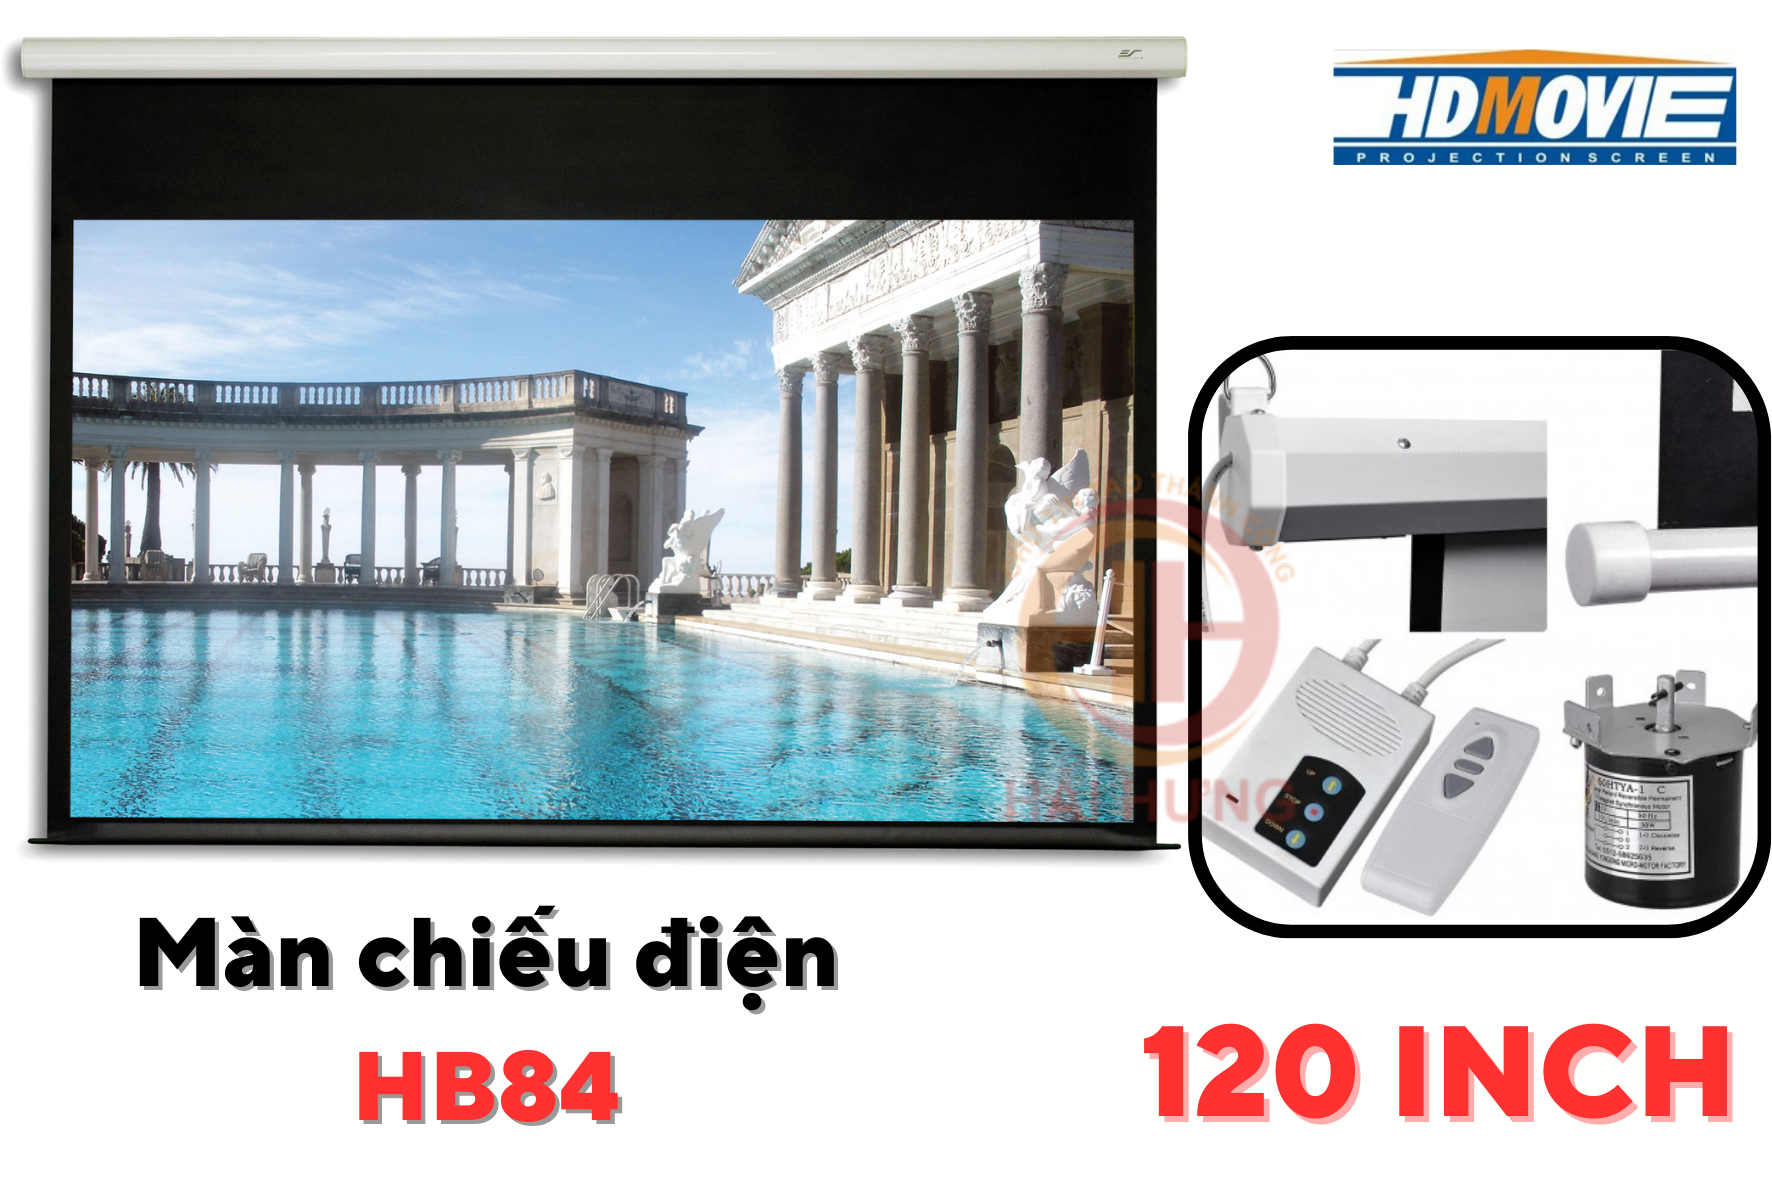 Màn chiếu điện điều khiển từ xa HD Movie HB84